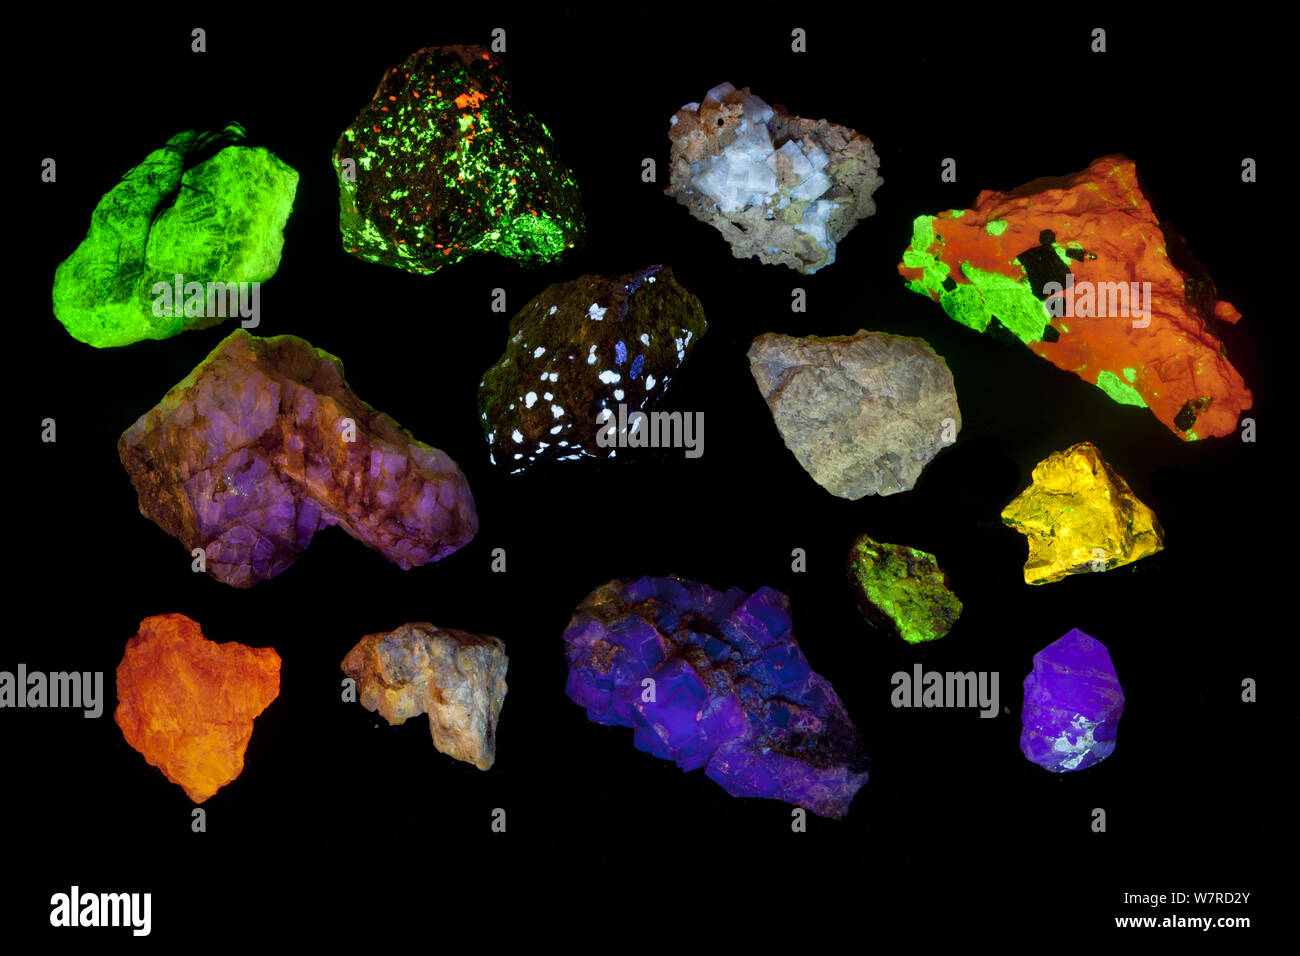 Verschiedene fluoreszierende Mineralien, die unter UV-Licht einschließlich, Willemite, Aragonit, Fluorit und Zirkon. Siehe Bild 1434814 für bestimmte Identifikationen und Land der Herkunft. Stockfoto